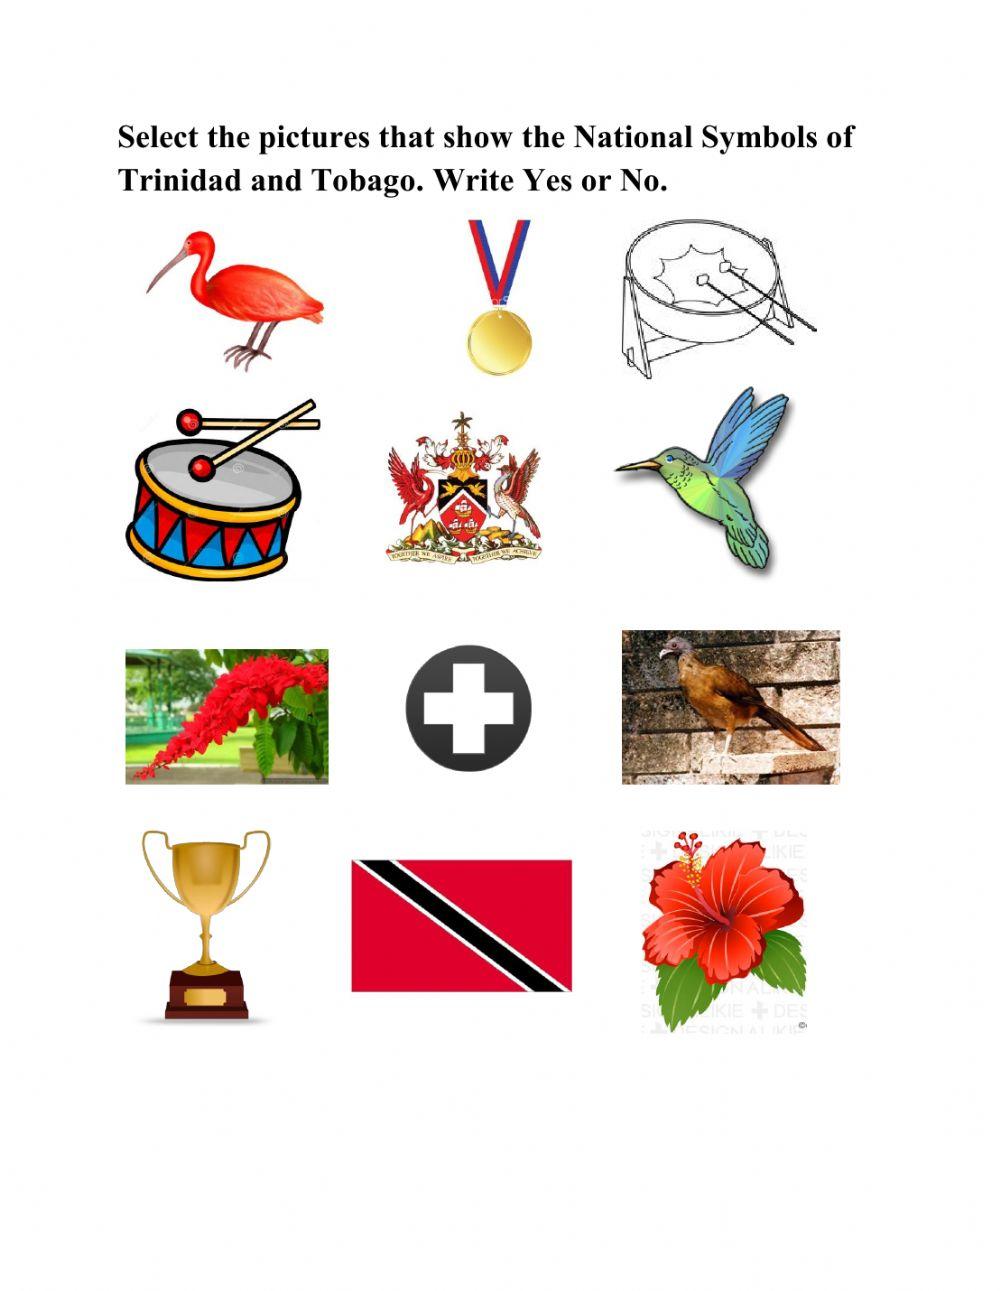 National Symbols of Trinidad and Tobago